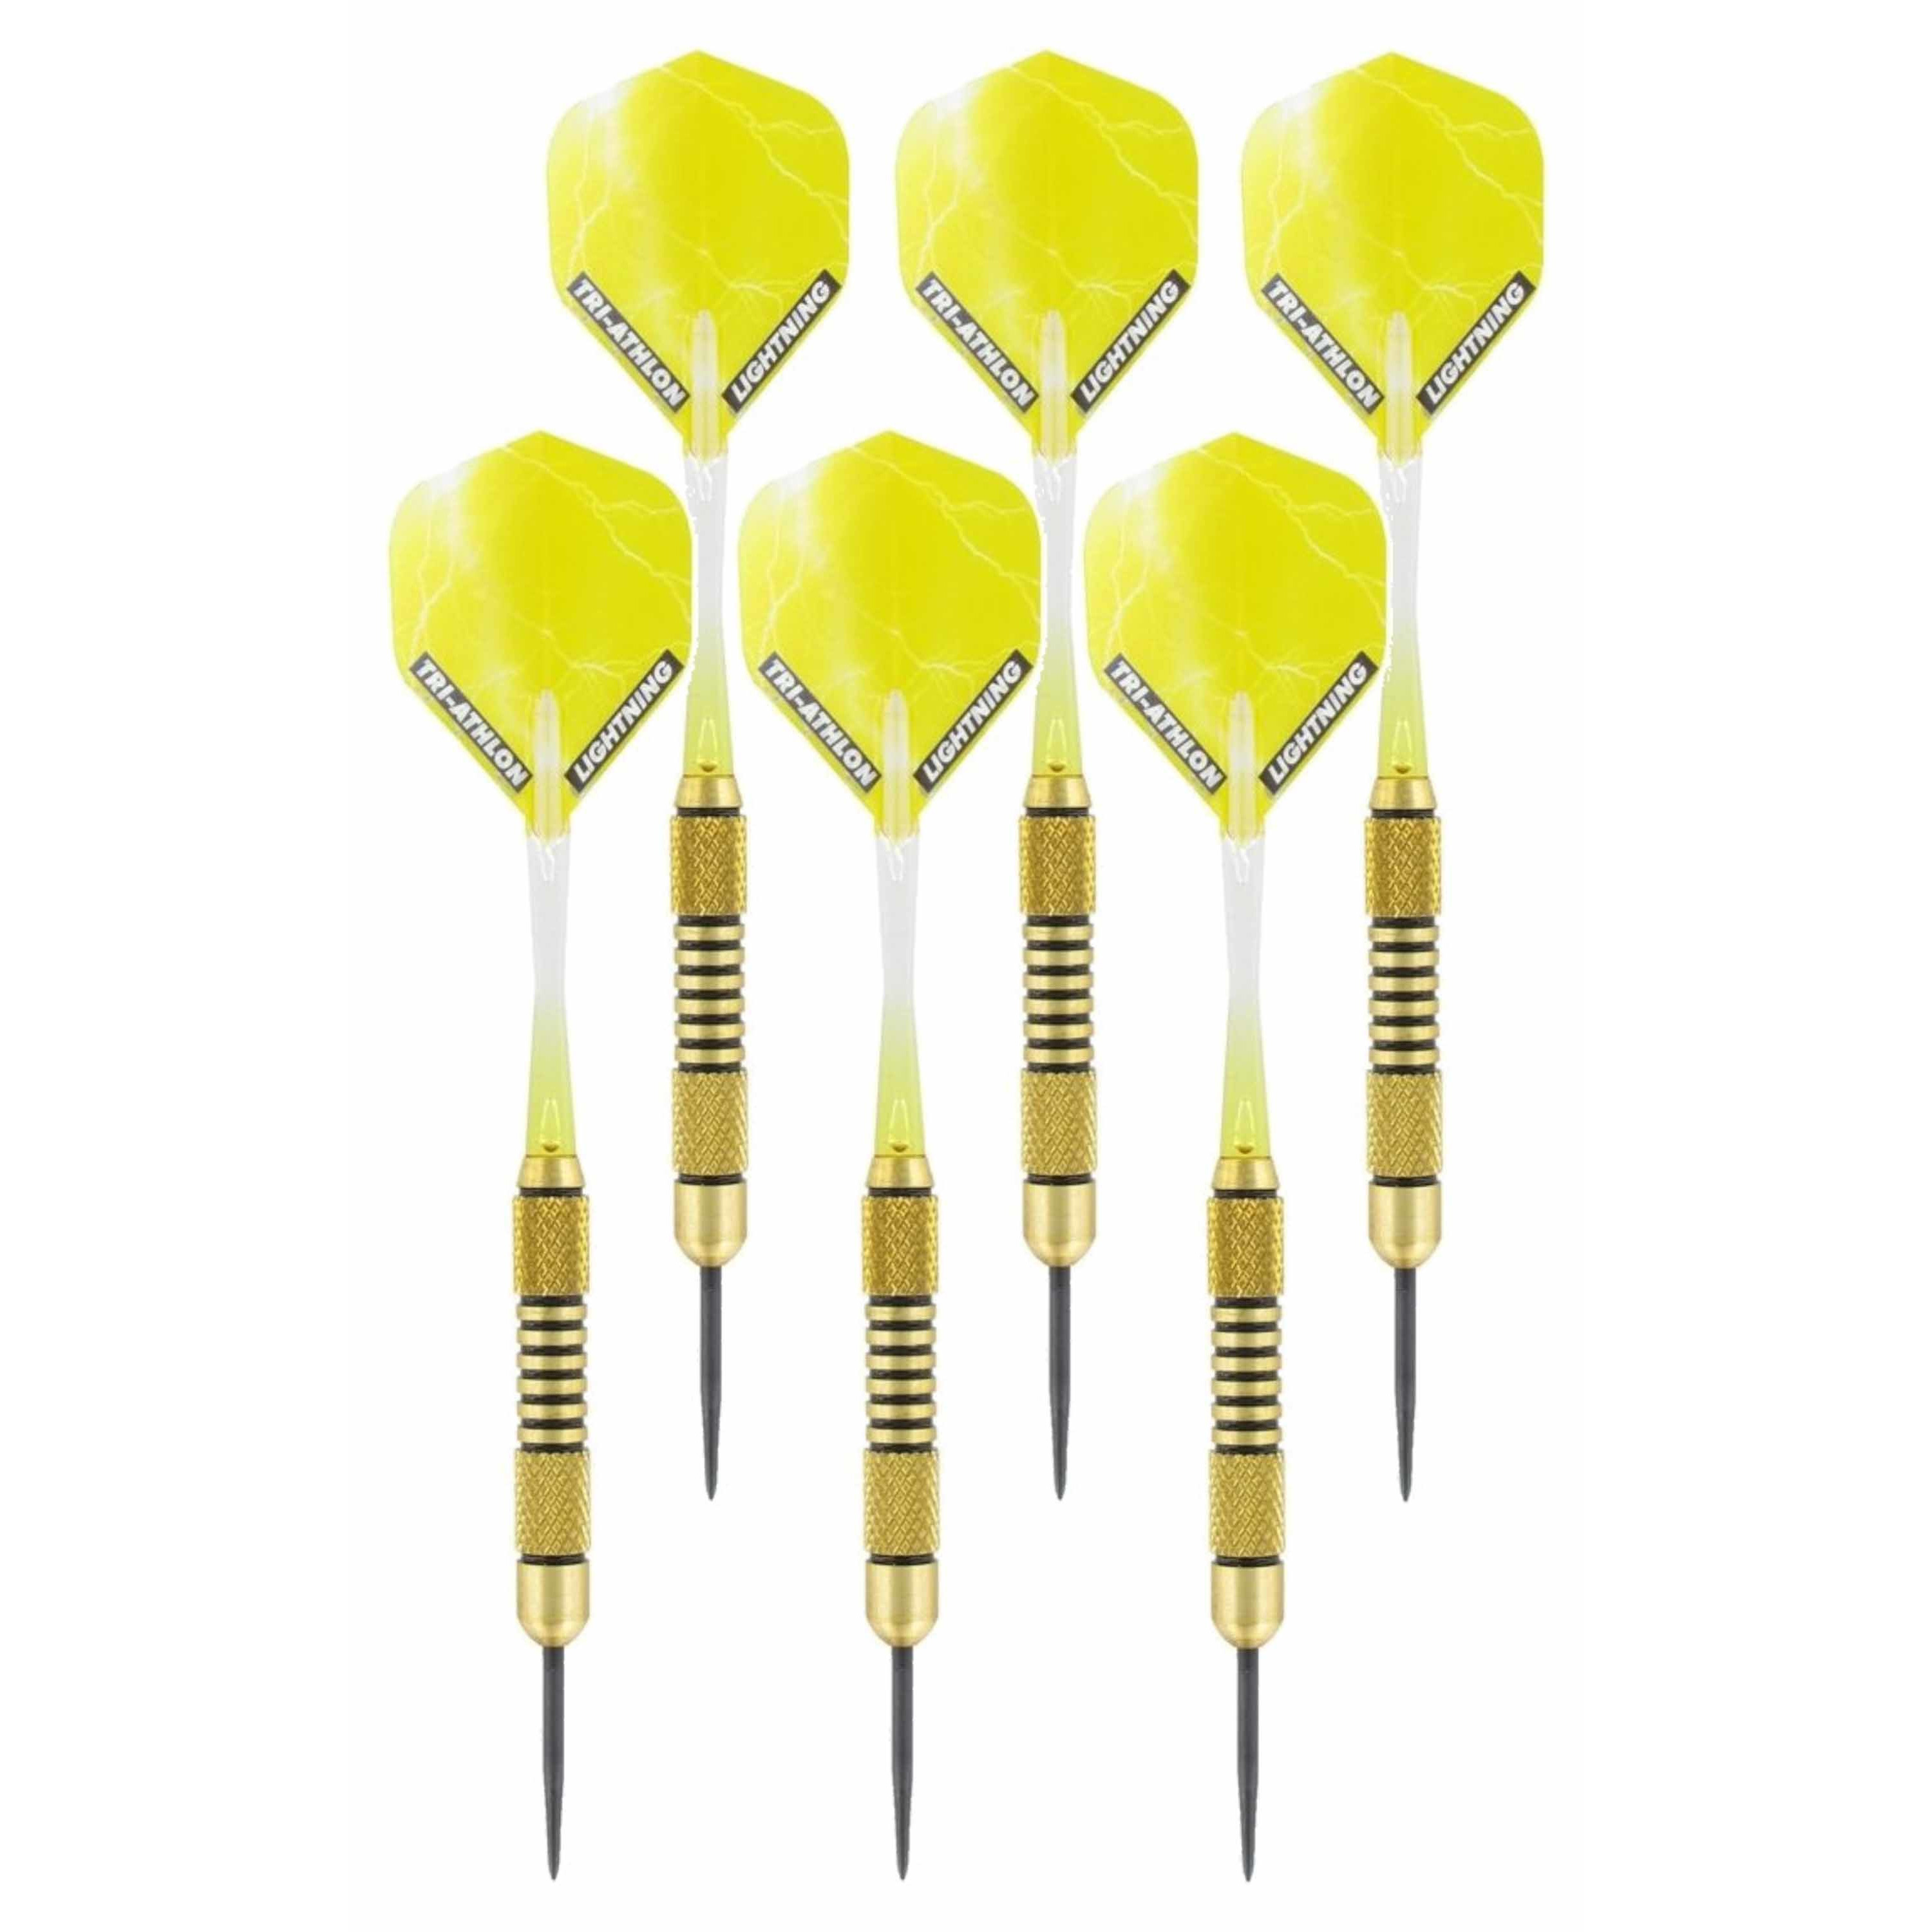 3x Set van dartpijltjes Speedy Yellow Brass met Metallic Lightning flites 19 grams